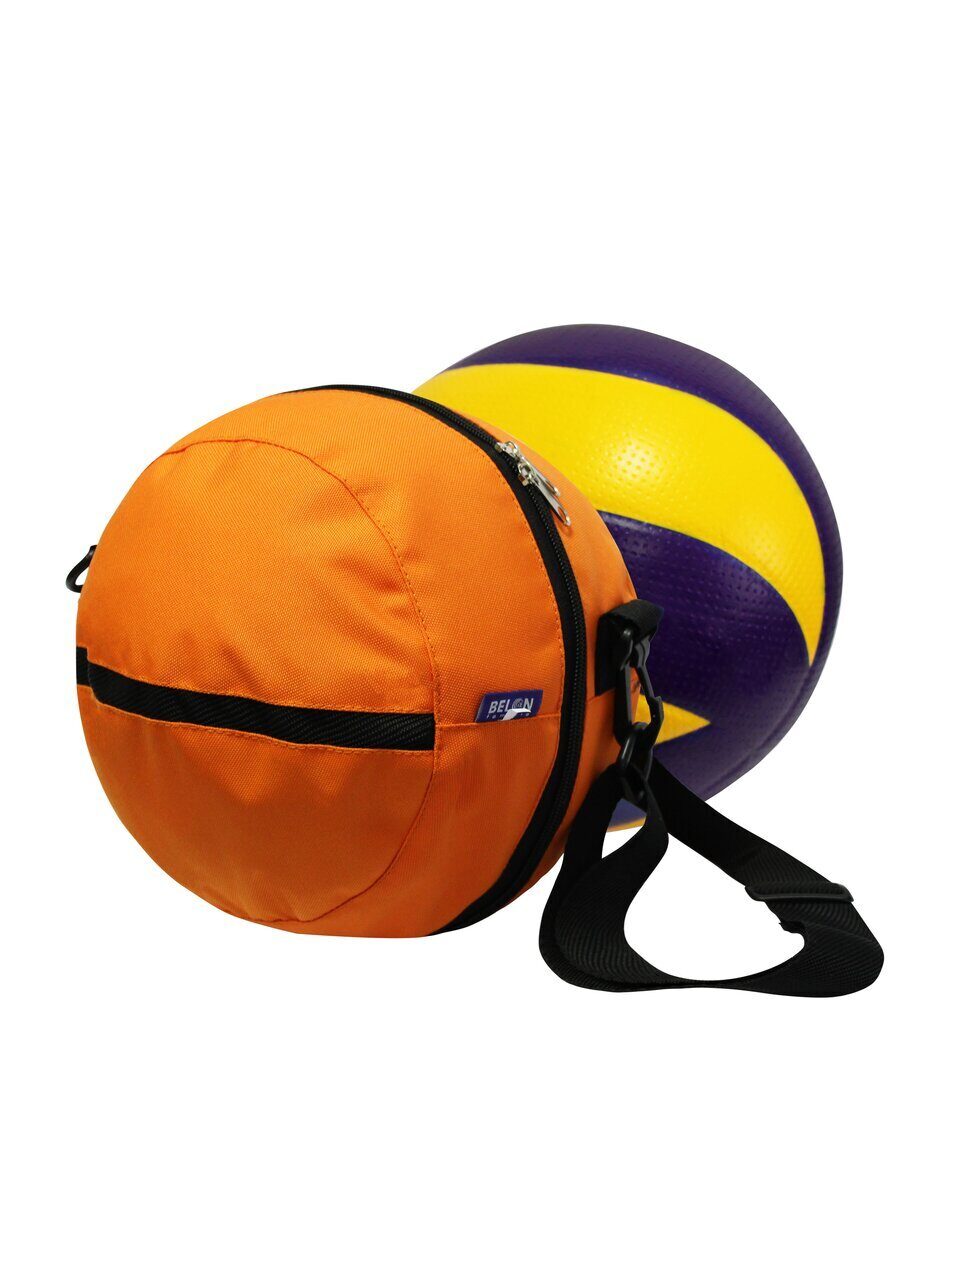 Сумка для мяча Belon familia цвет оранжевый дл. окр. 70 см